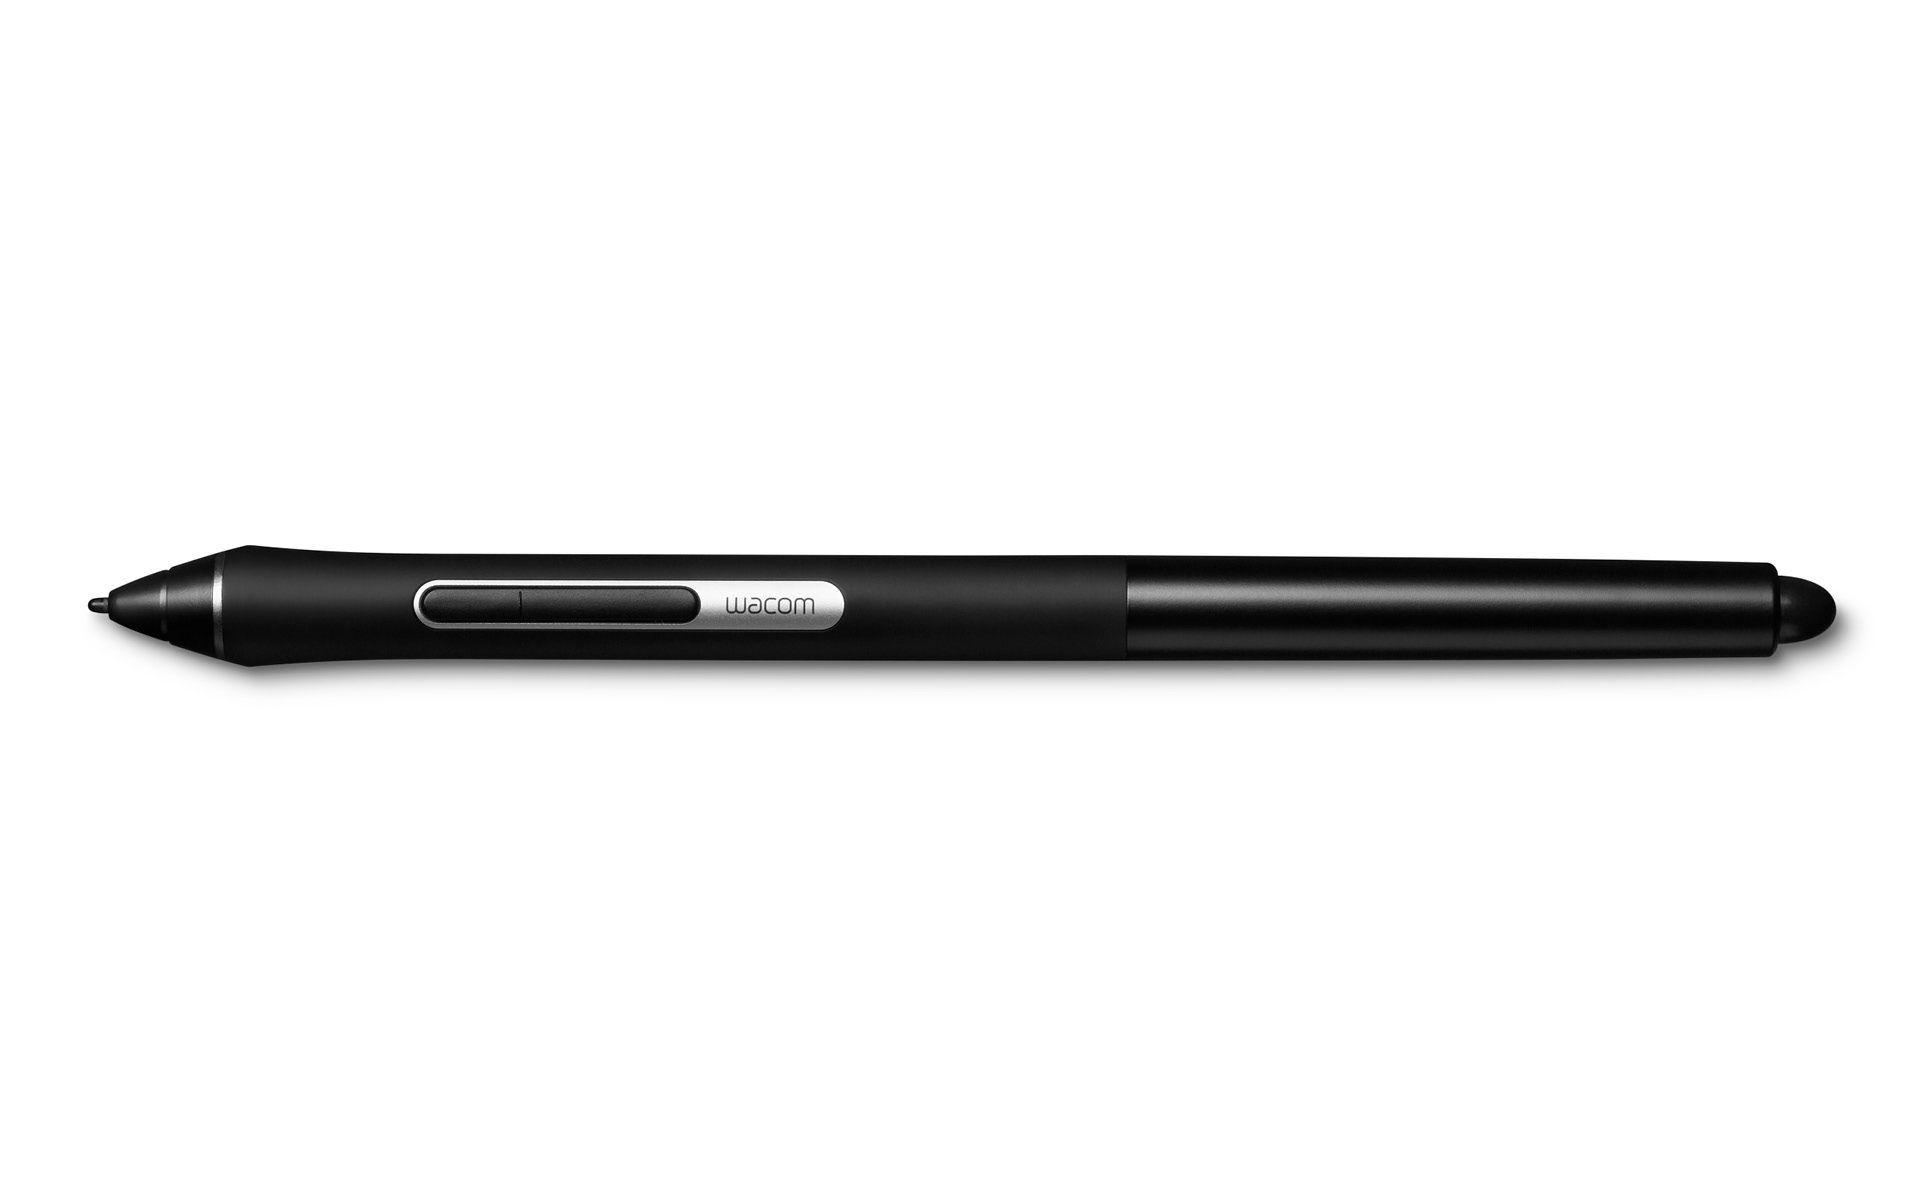  Accessory Pen Black DTK1651